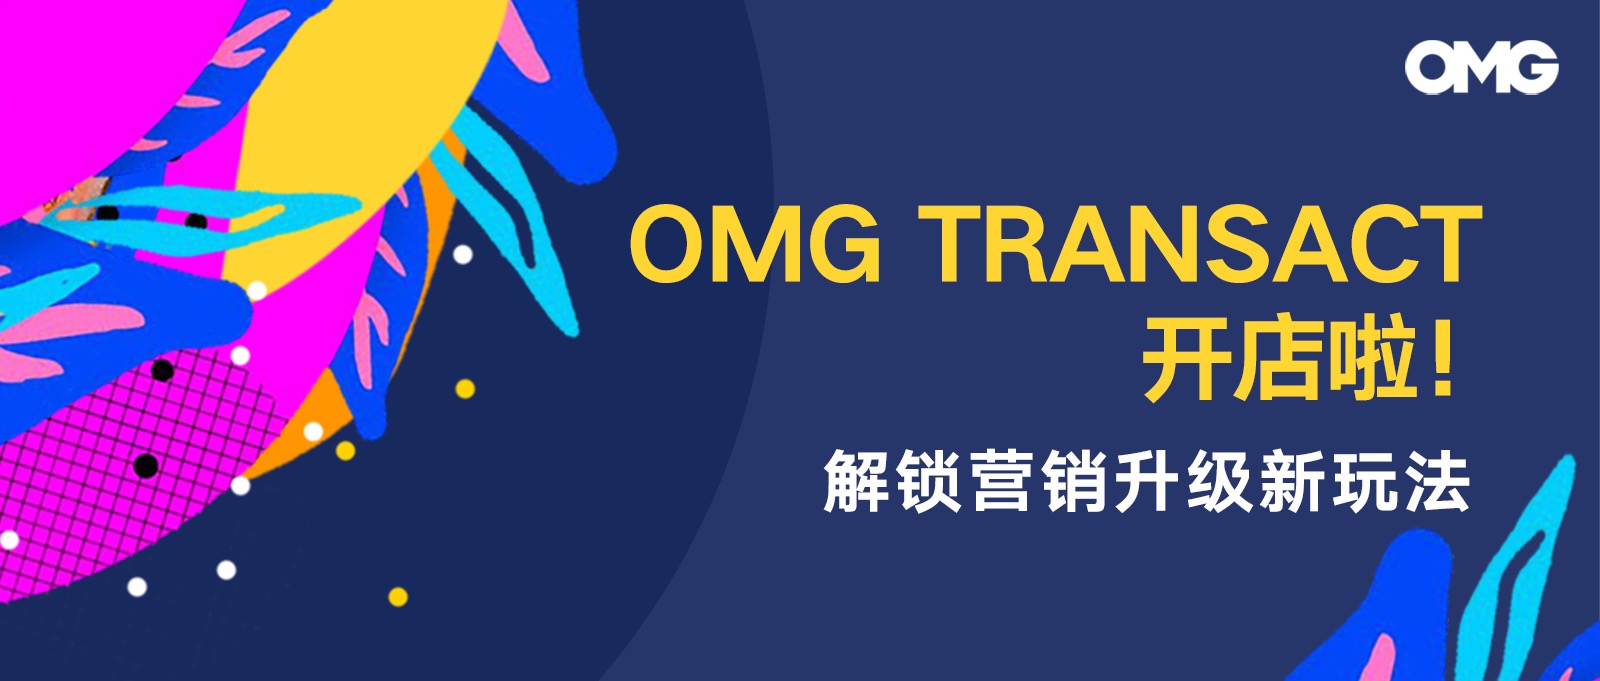 预告 | OMG Transact开店啦！解锁营销升级新玩法